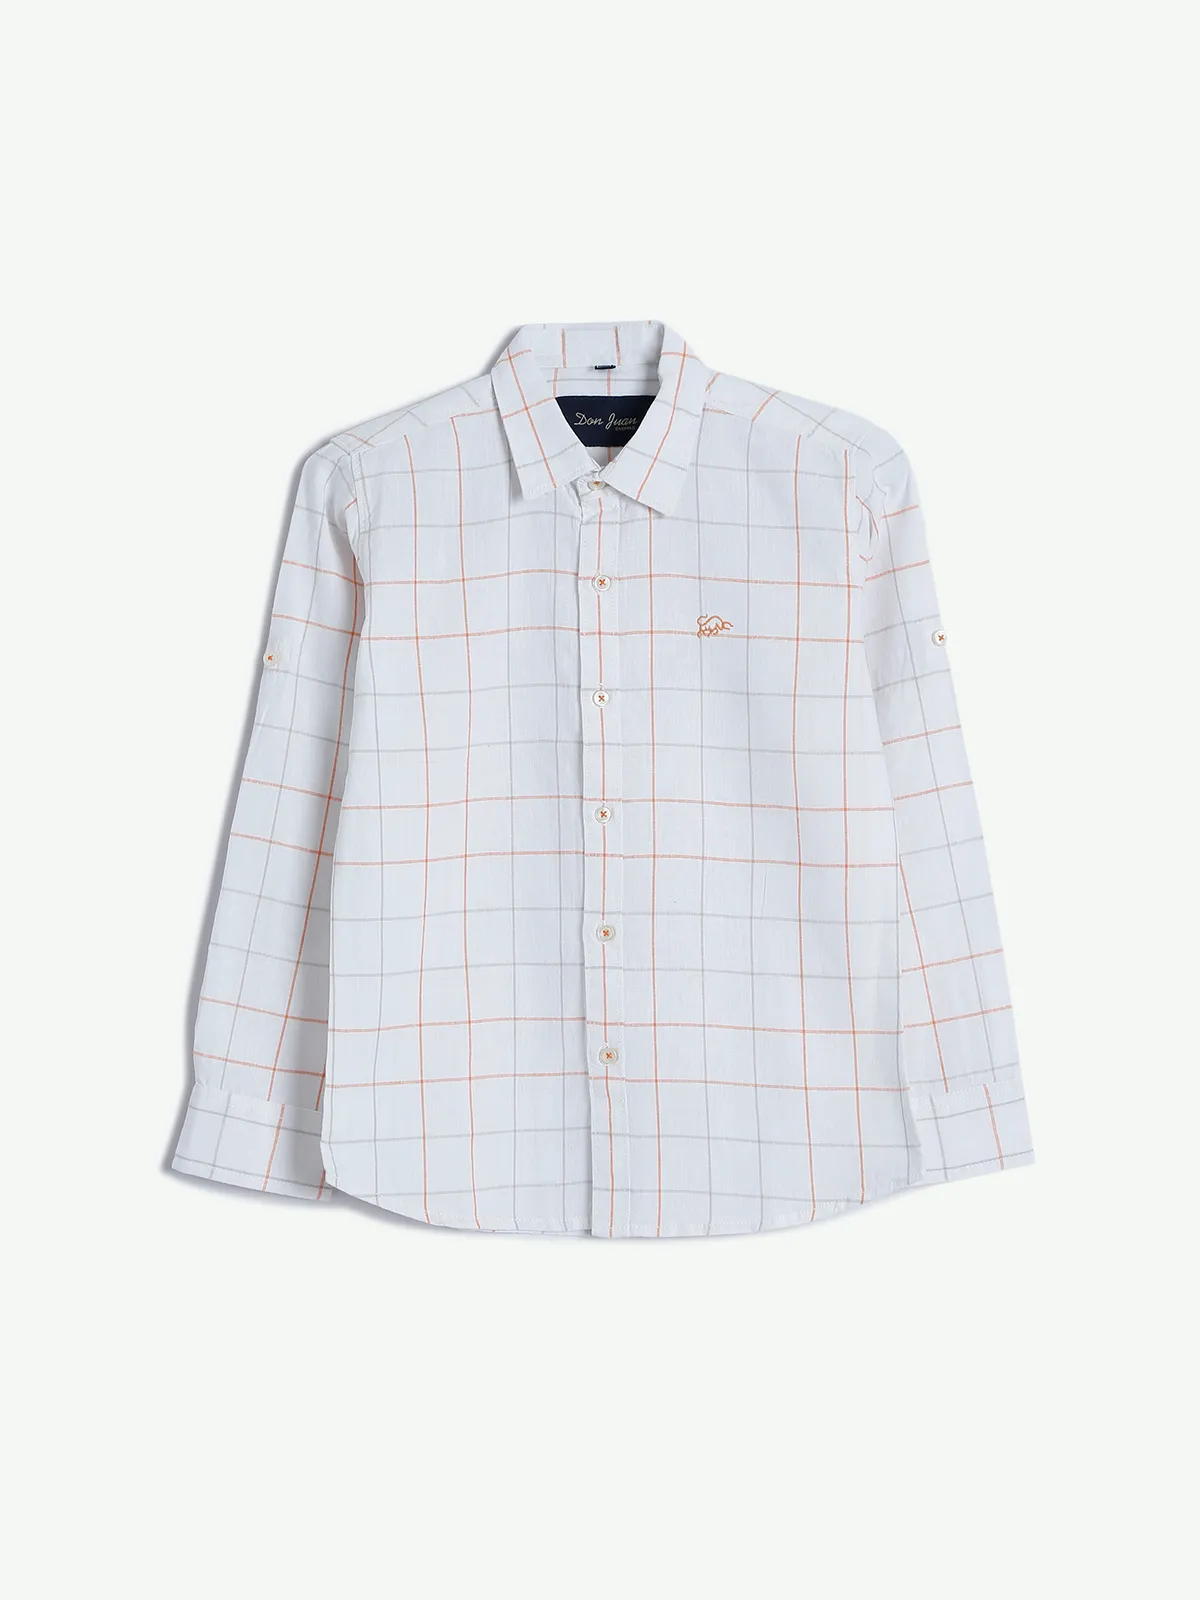 DNJS white and orange cotton checks shirt